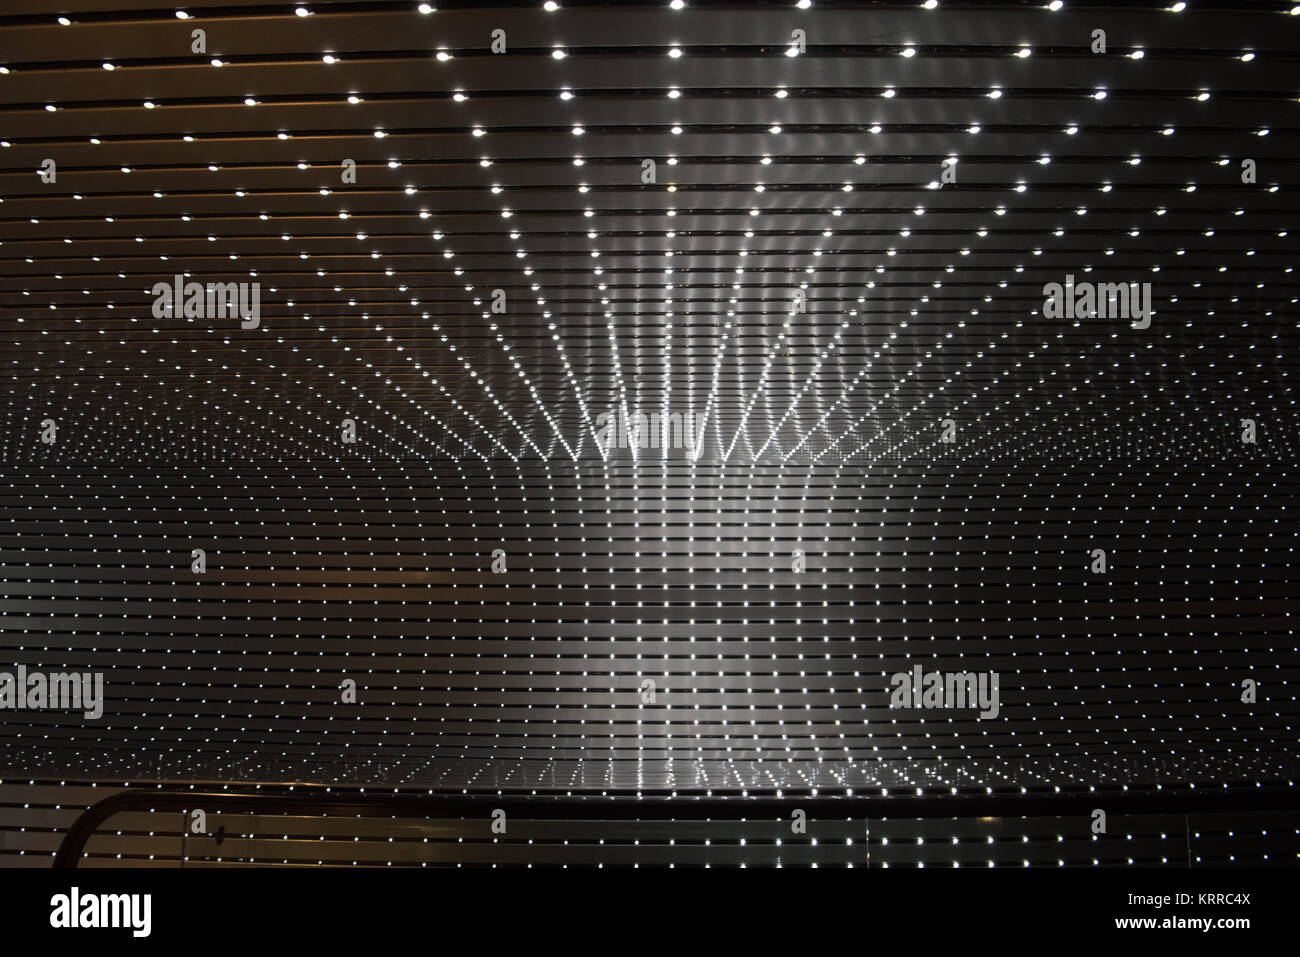 WASHINGTON DC, USA – Multiverse by Leo Villareal ist eine faszinierende LED-Lichtinstallation in der National Gallery of Art in Washington DC. Das dynamische Kunstwerk besteht aus 41.000 LED-Knoten, die ein fesselndes visuelles Erlebnis schaffen, das das Konzept des Multiversums durch Licht, Bewegung und Technologie erforscht. Stockfoto